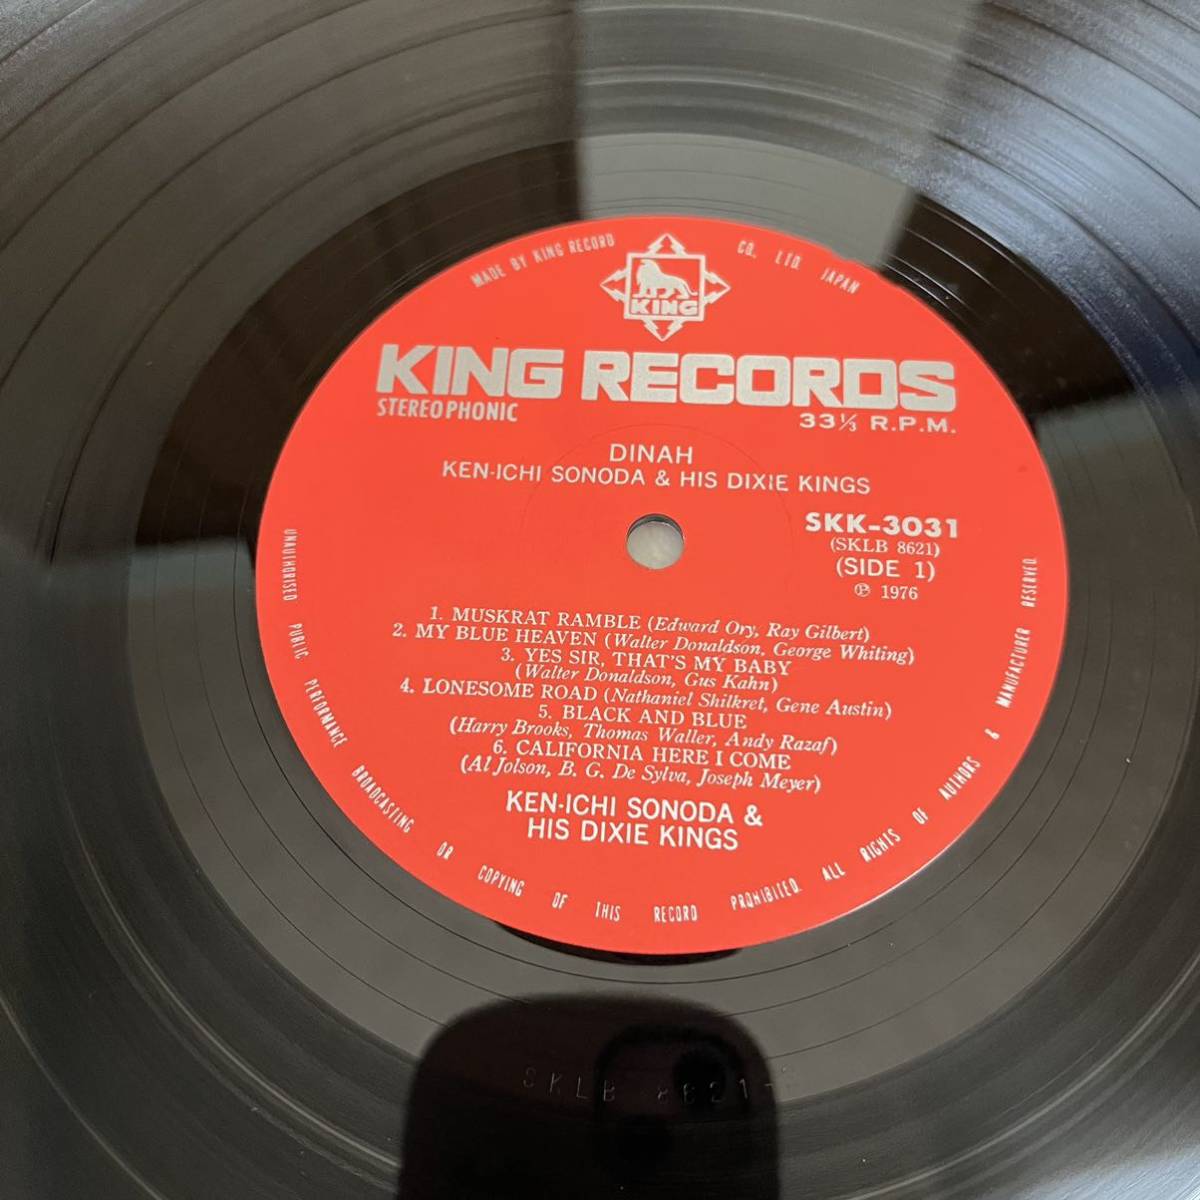 【帯付】薗田憲一とデキシーキングス ダイナ KENICHI SONODA&HIS DIXIE KINGS DINAH / LP レコード / SKK3031 / 和ジャズ /_画像8